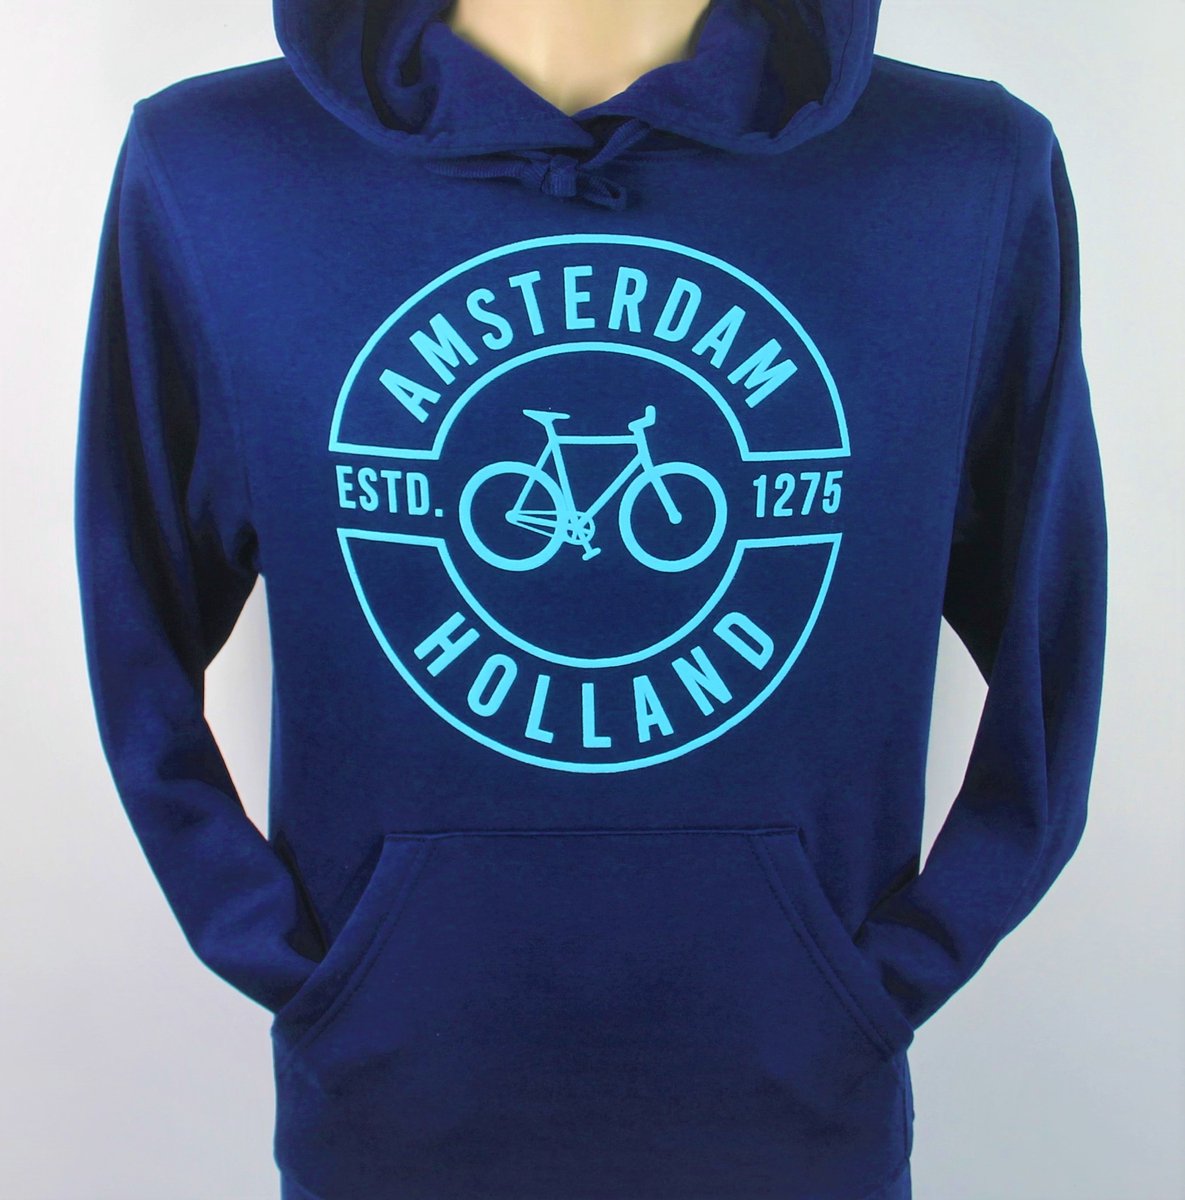 Hooded Sweater - Met Trekkoord - Capuchon - Chill - Trui - Vest - met capuchon - Outdoor - Fiets - Discover - 1275 -Amsterdam - Bike Town - Travel - Blauwe Fiets - Navy - Maat M